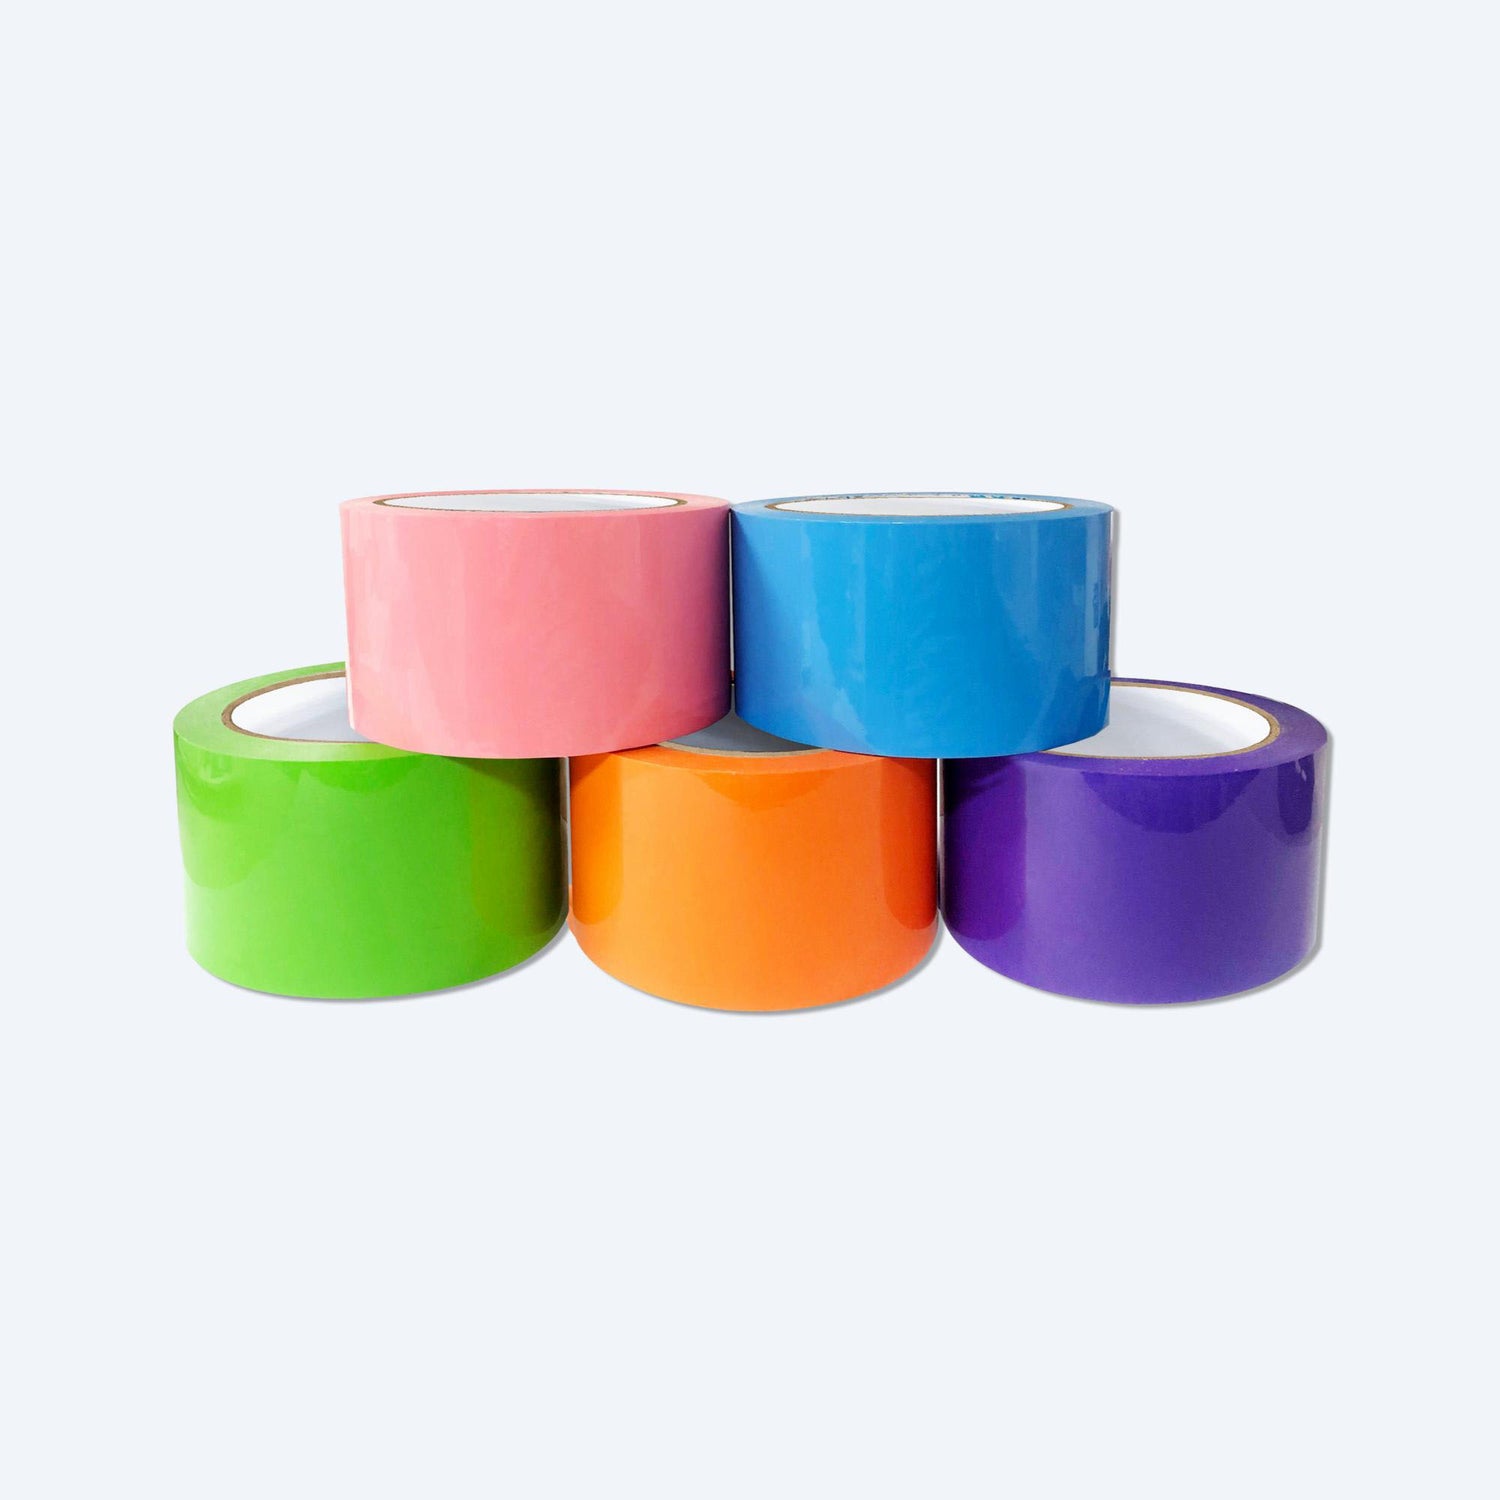 五卷色彩鮮豔的膠帶堆疊在一起，hktvmall 商戶發貨必選，包括粉紅色、藍色、綠色、橙色和紫色。這些多用途膠帶適合於 hktvmall 的商戶用於包裝和裝飾，並且其光滑亮麗的表面在 hktvmall 上特別受歡迎。